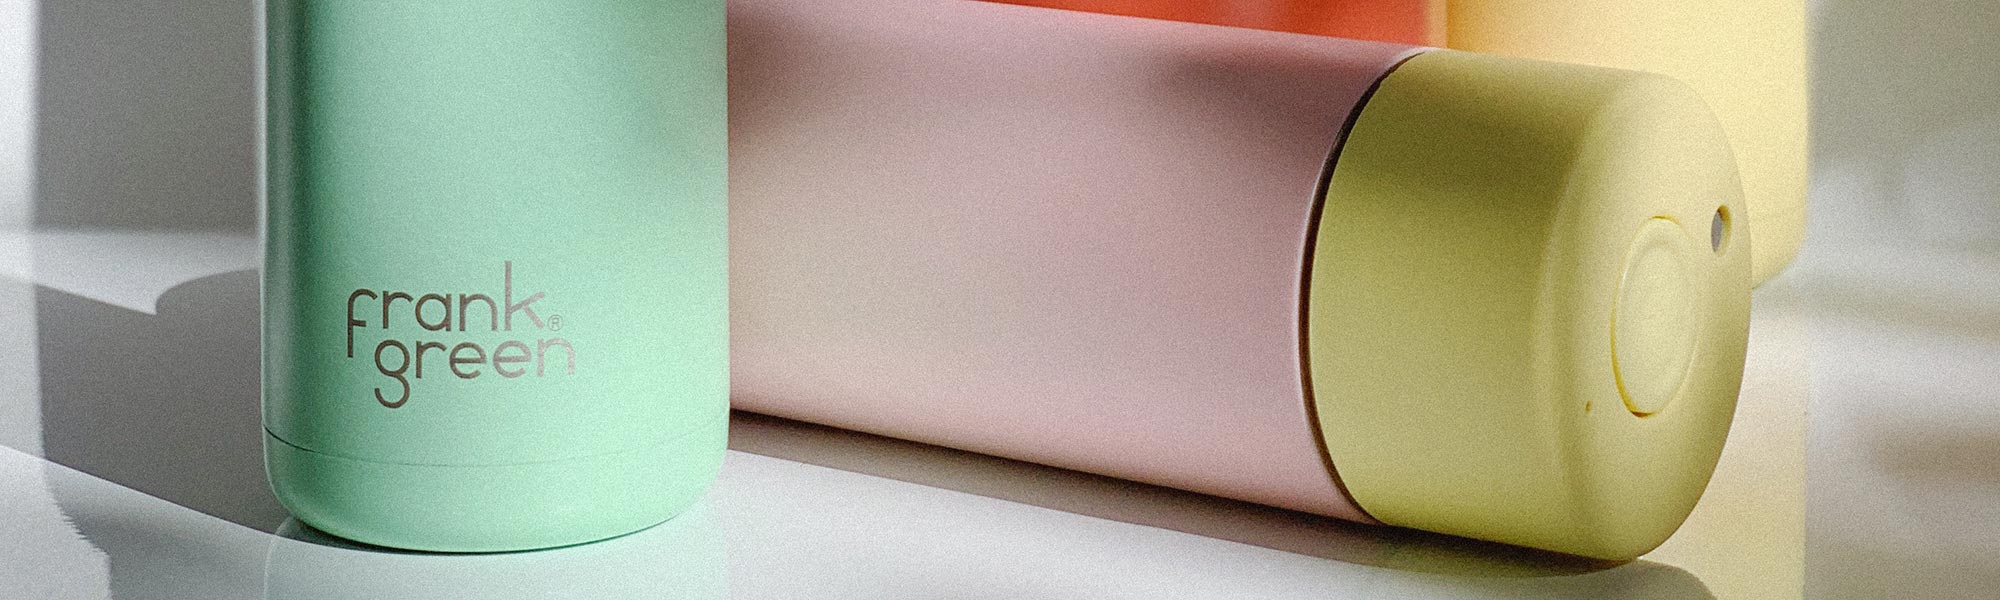 Frank Green pasztell színű termosz kulacsok borítókép